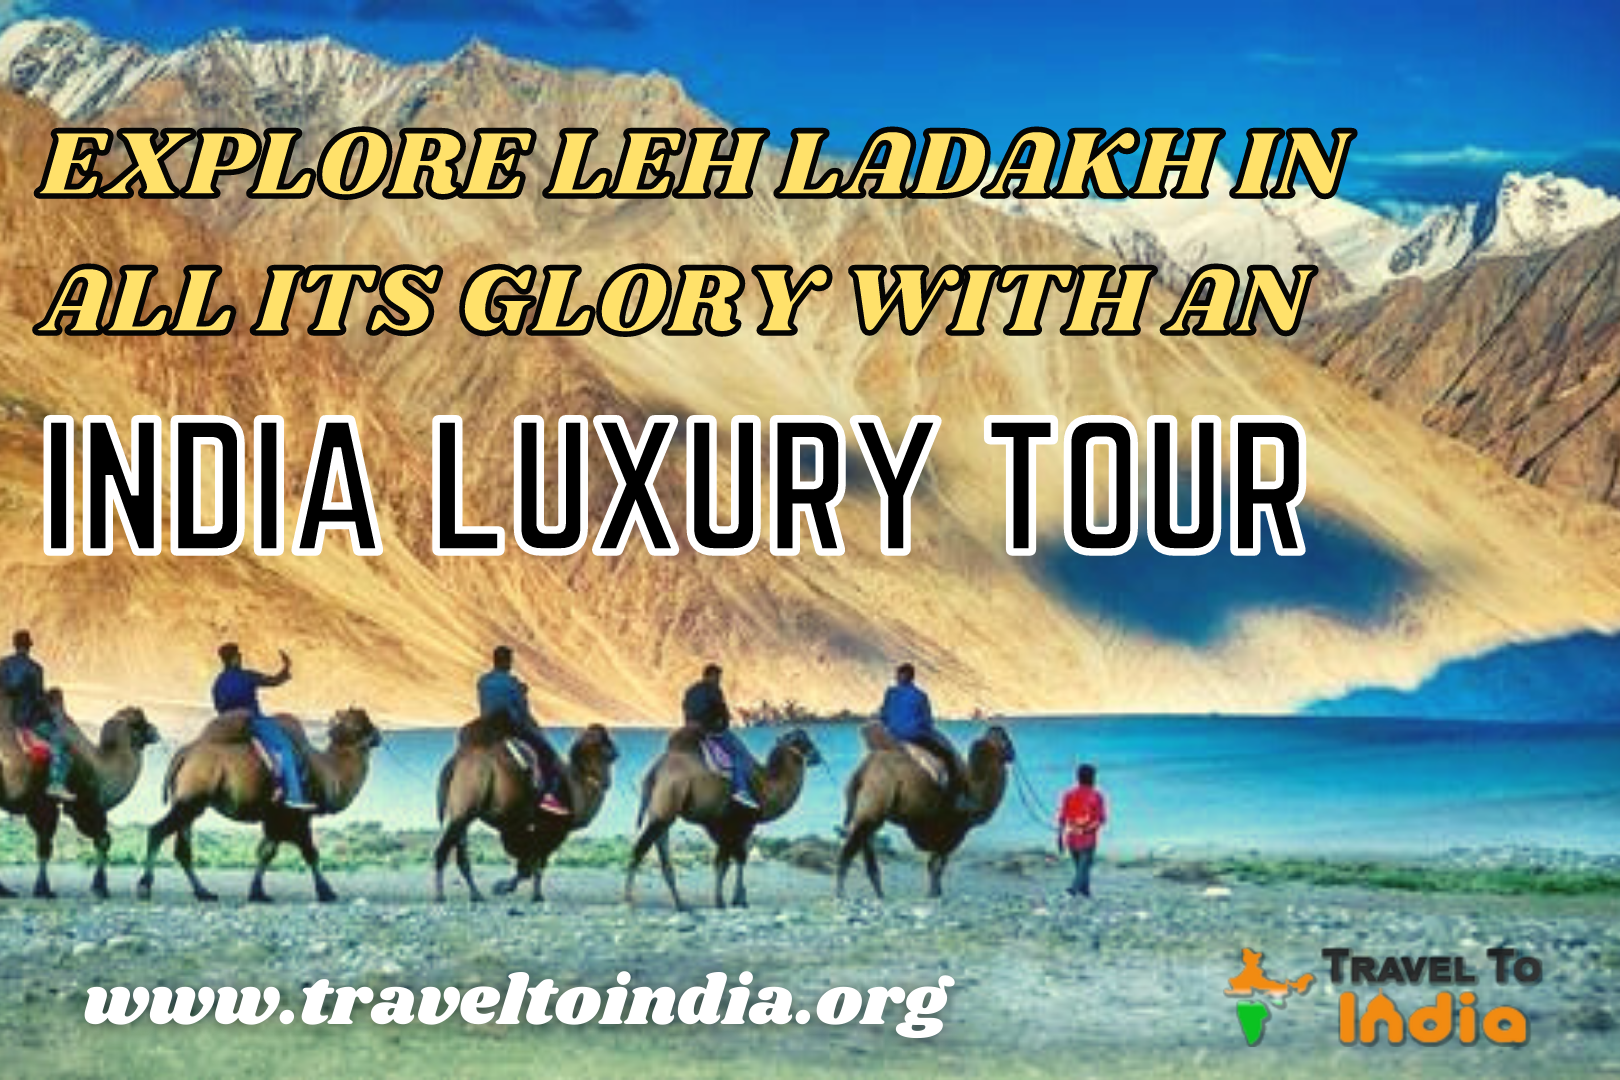 India Luxury Tour